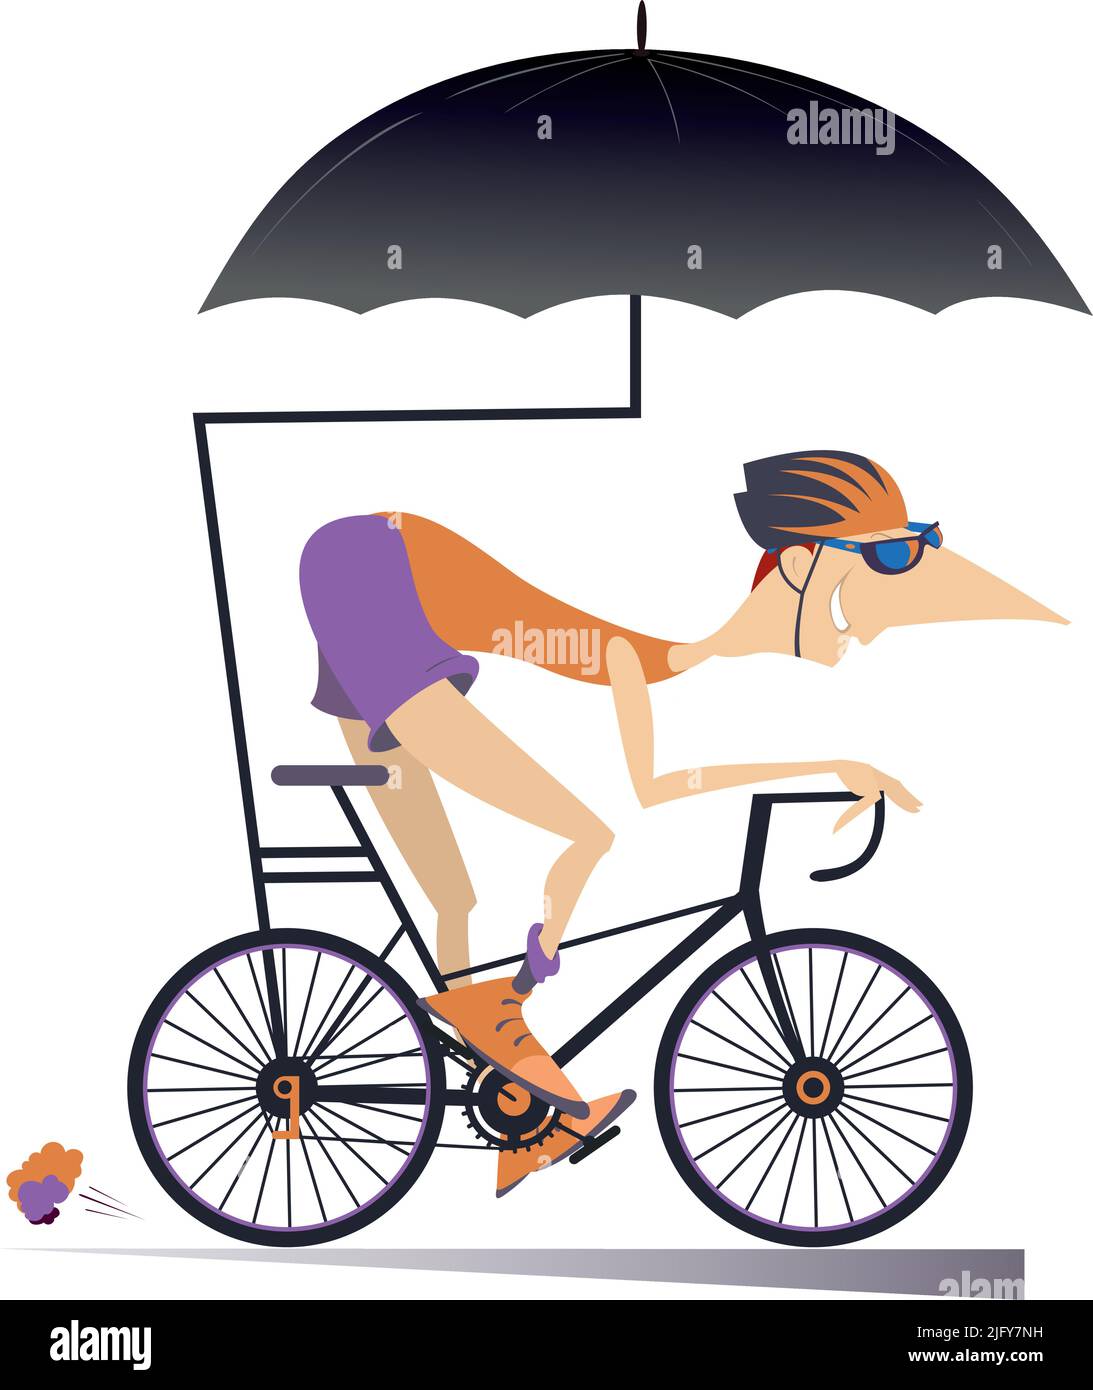 Cartoon Mann fährt ein Fahrrad unter einem Regenschirm Illustration.  Lächelnder Mann im Helm fährt ein Fahrrad und schützt sich mit Schirm  isoliert auf weiß Stock-Vektorgrafik - Alamy